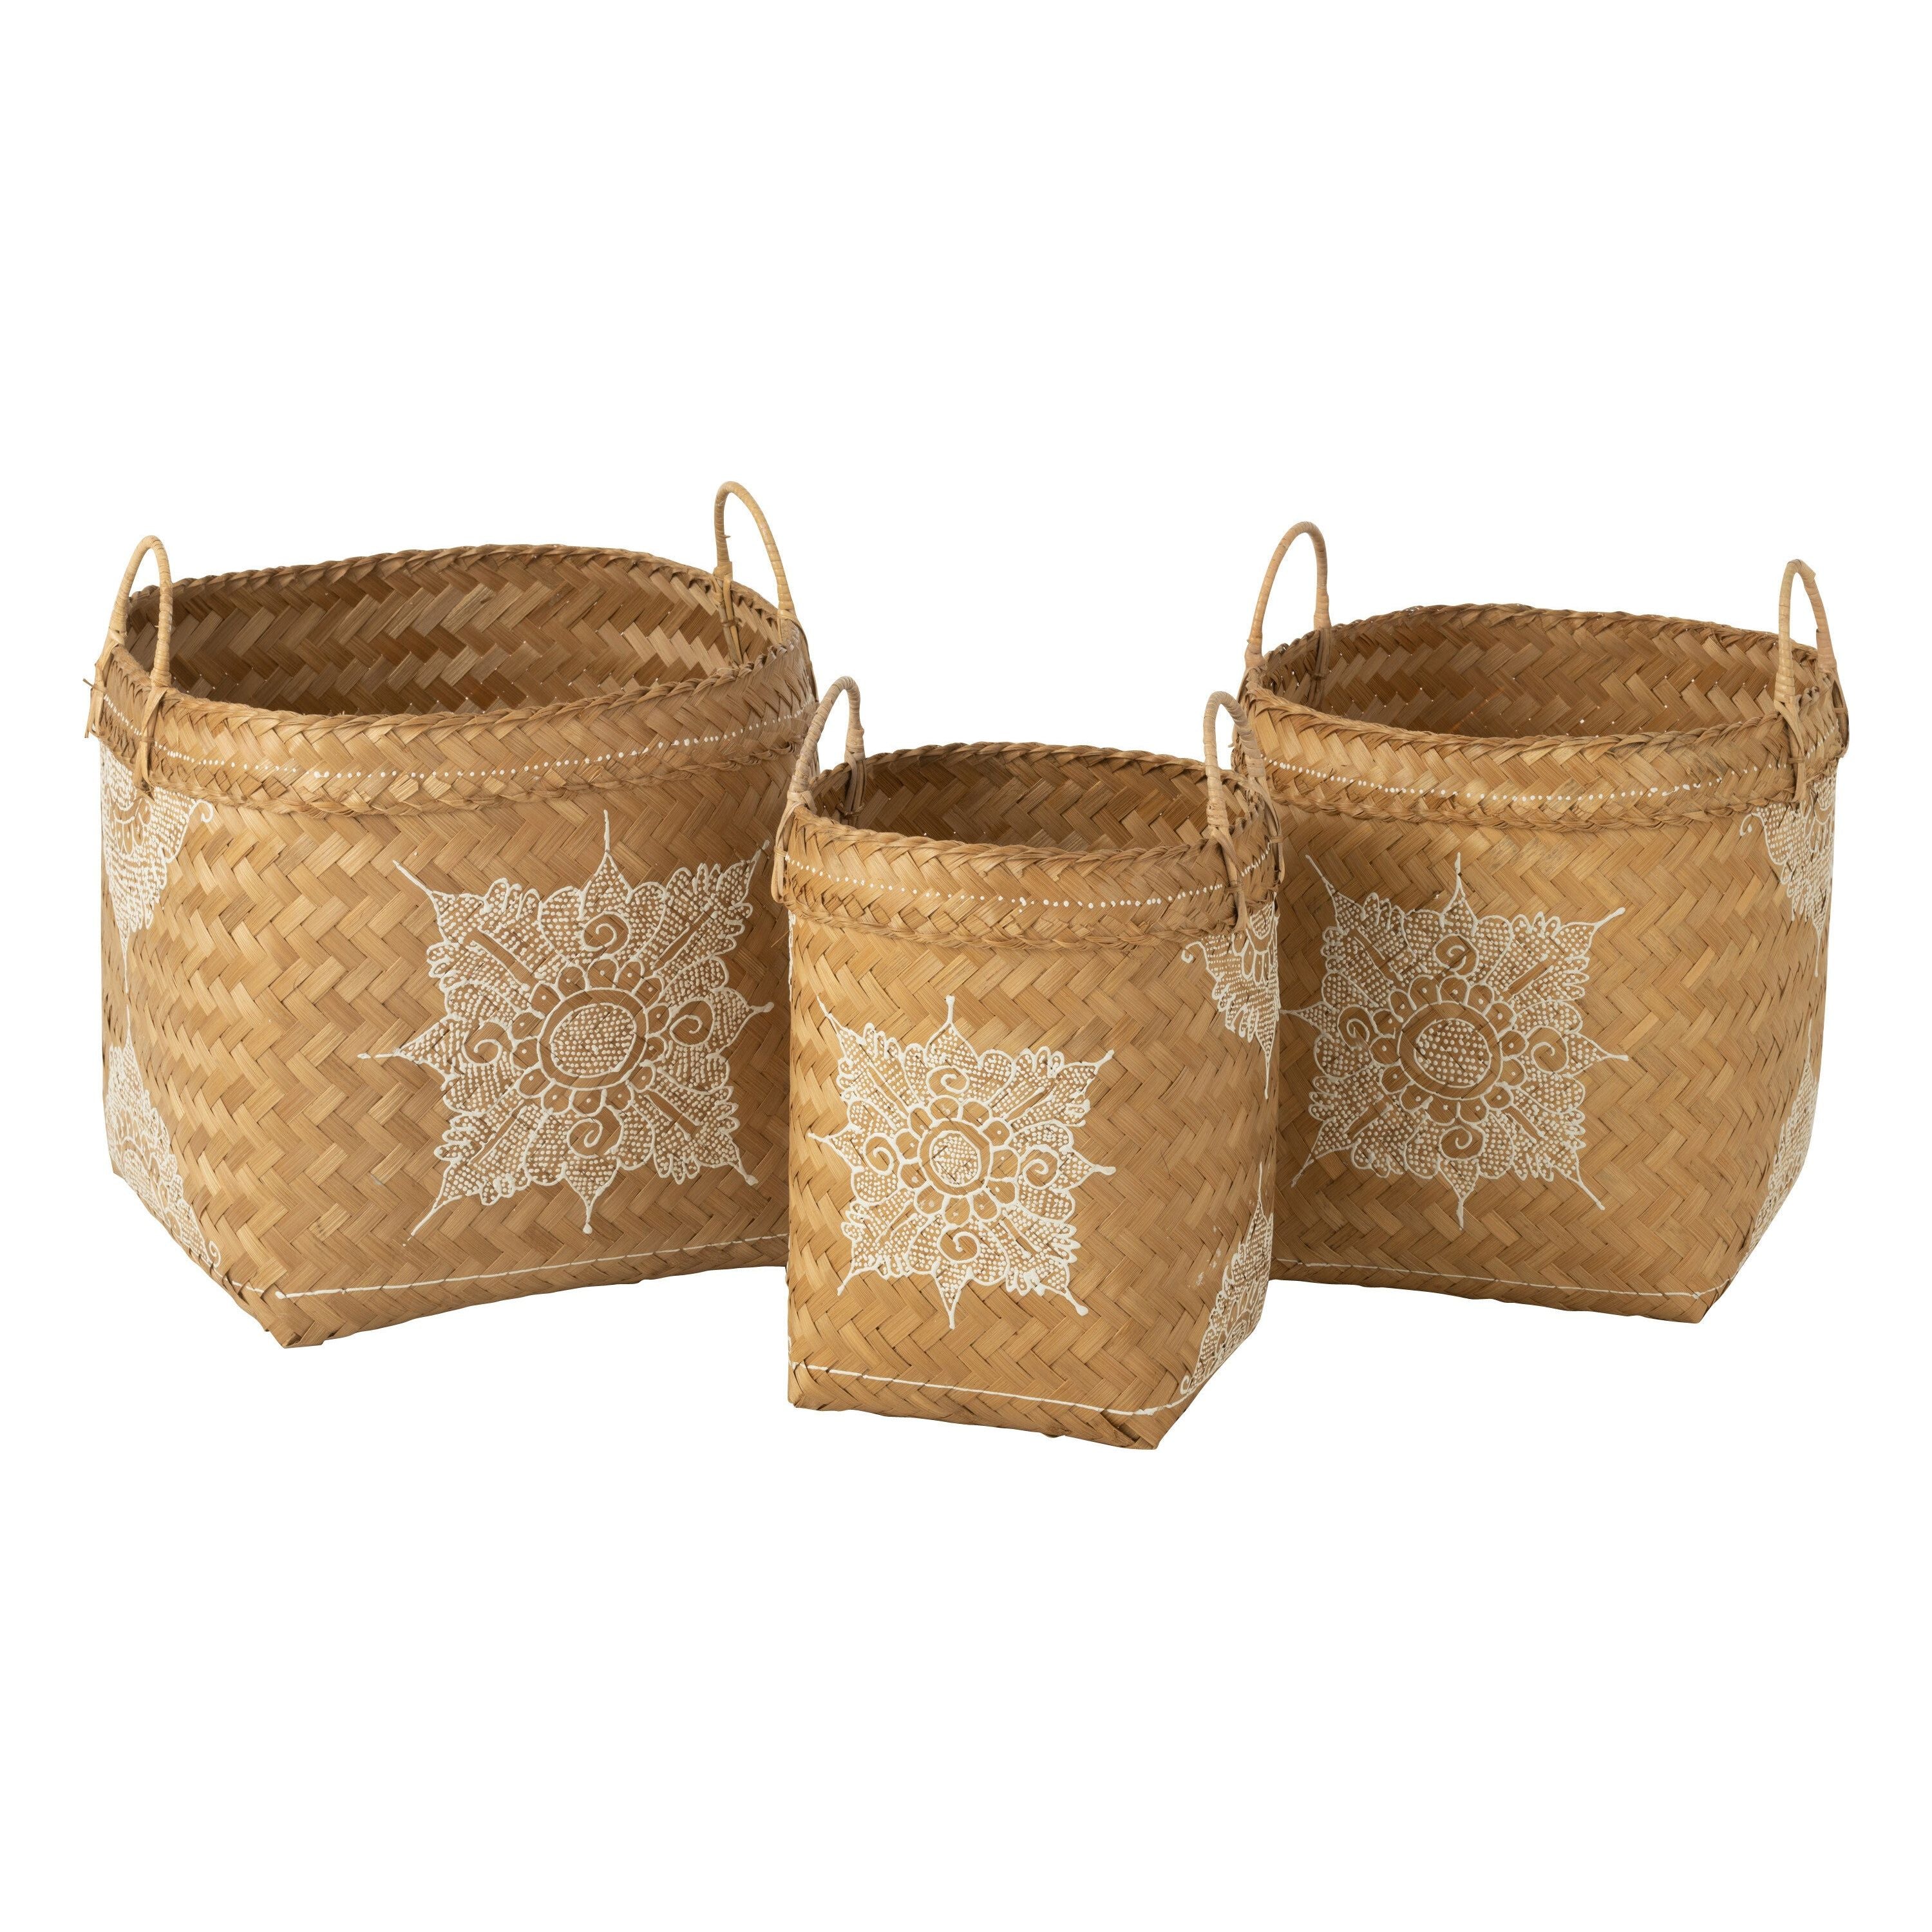 Baskets Drawing Bamboo White/natural